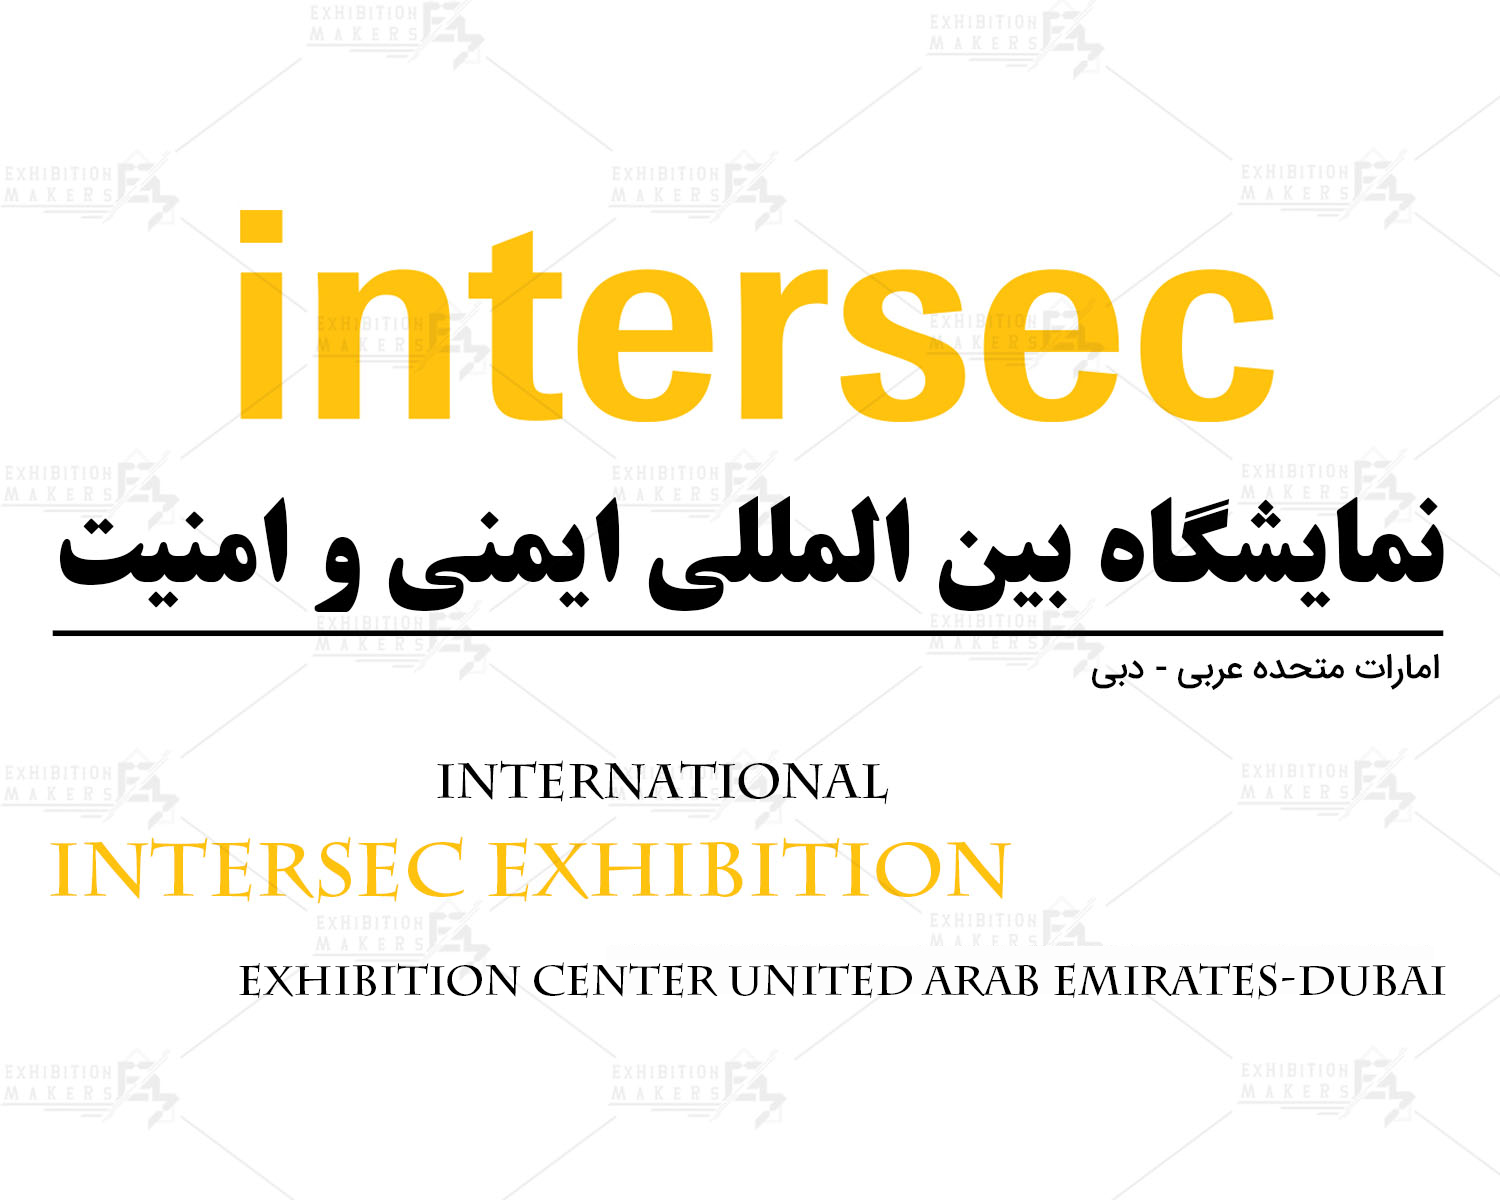 نمایشگاه بین المللی ایمنی و امنیت امارات متحده عربی- دبی